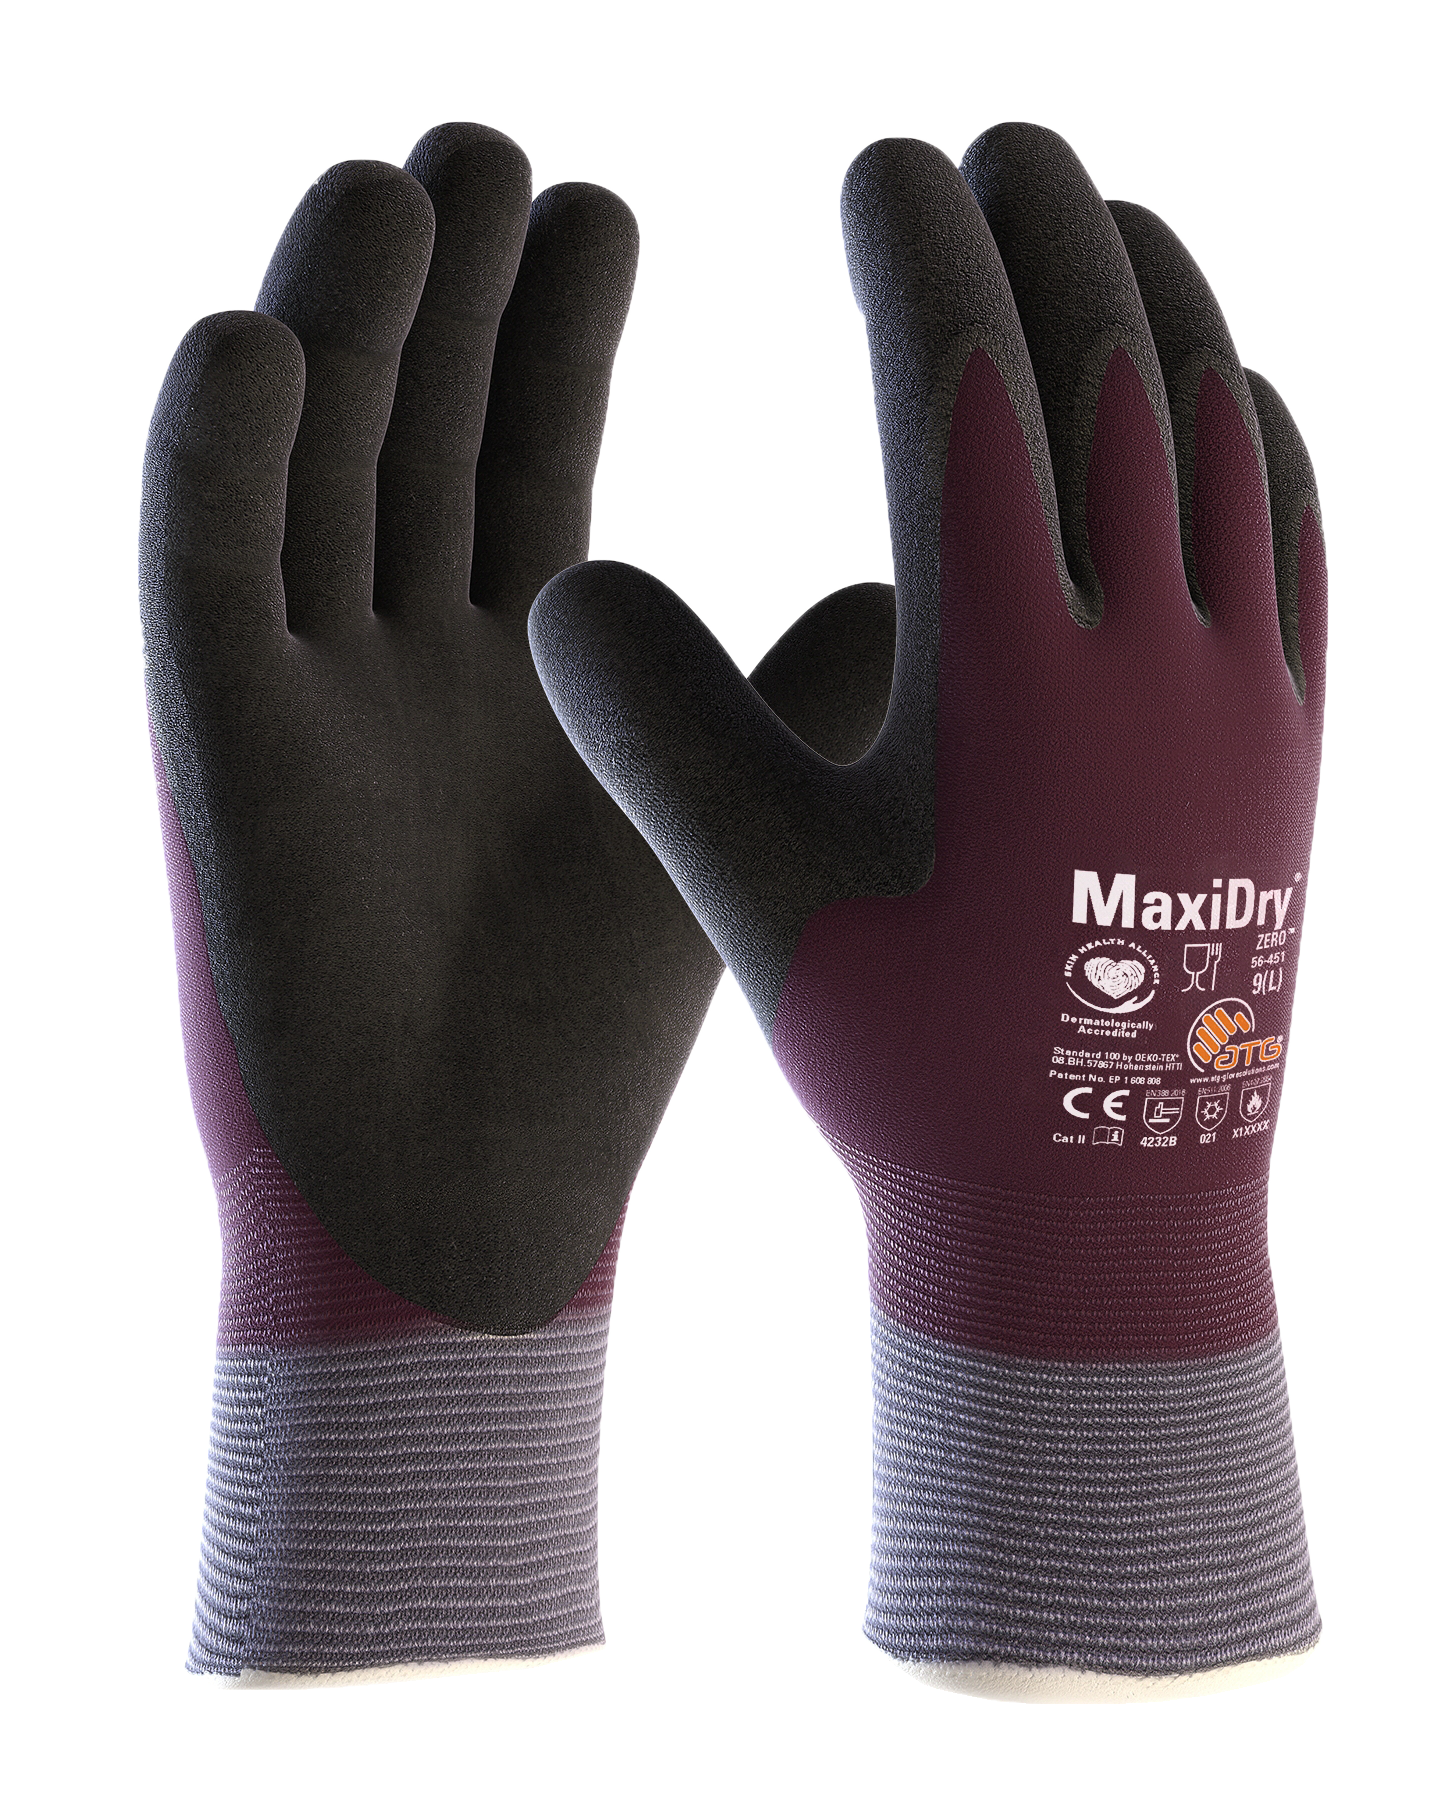 Kälteschutz-Handschuh MAXIDRY (Lebensmittel geeignet)